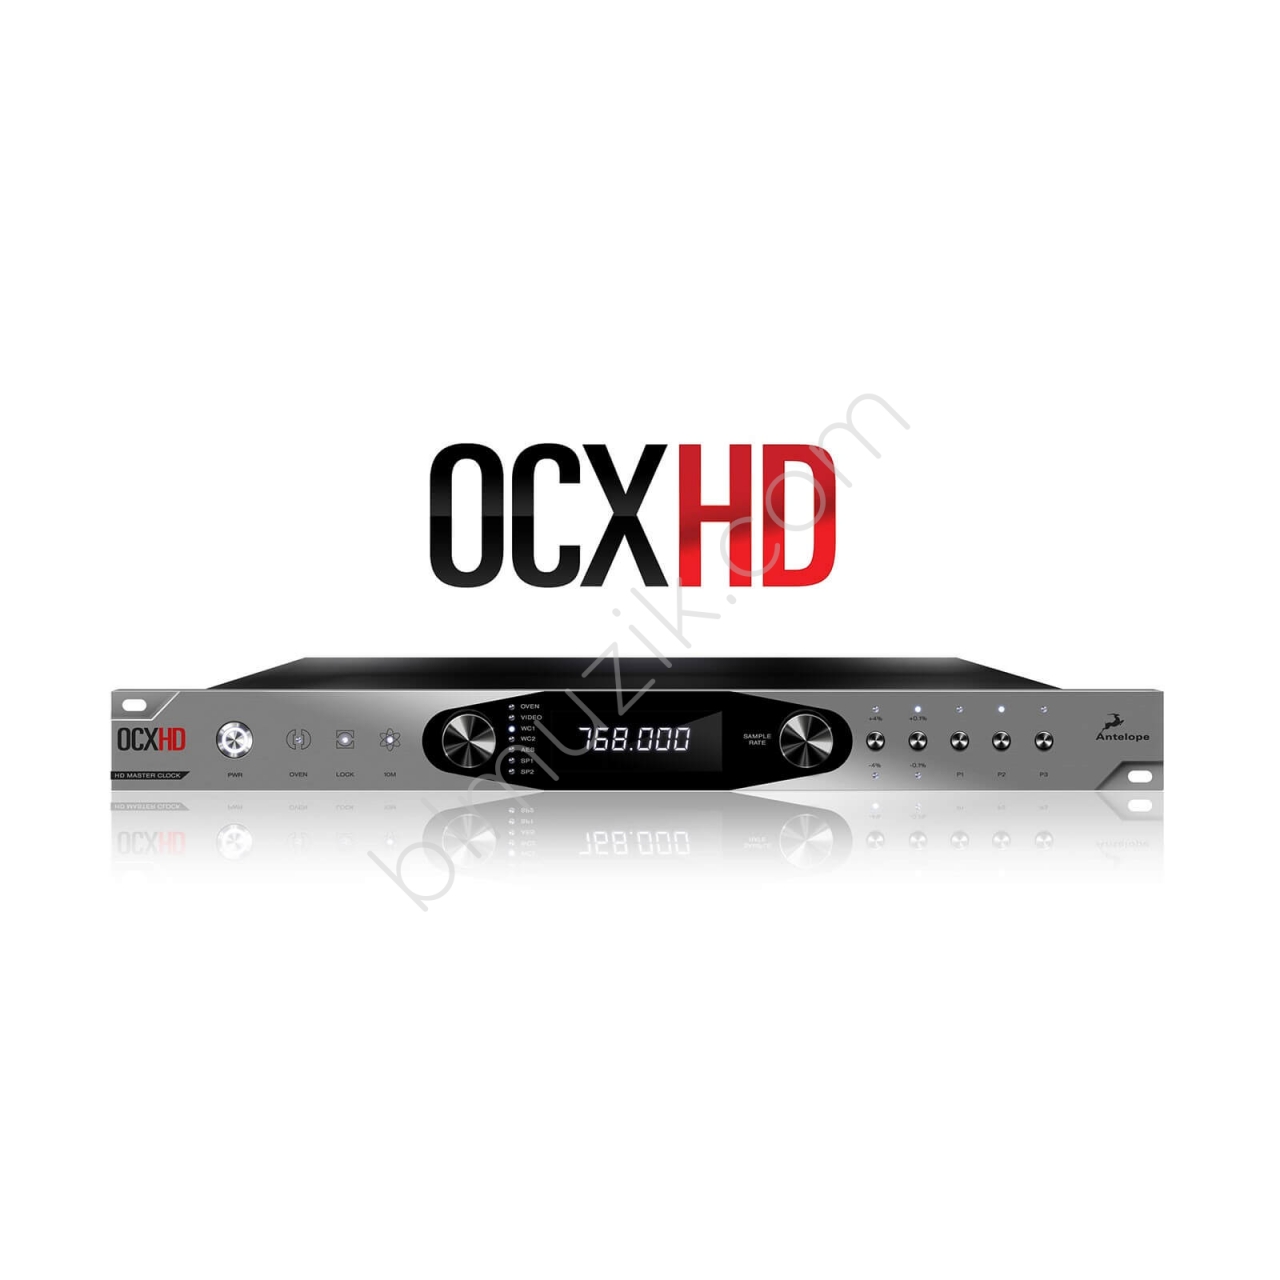 OCX HD